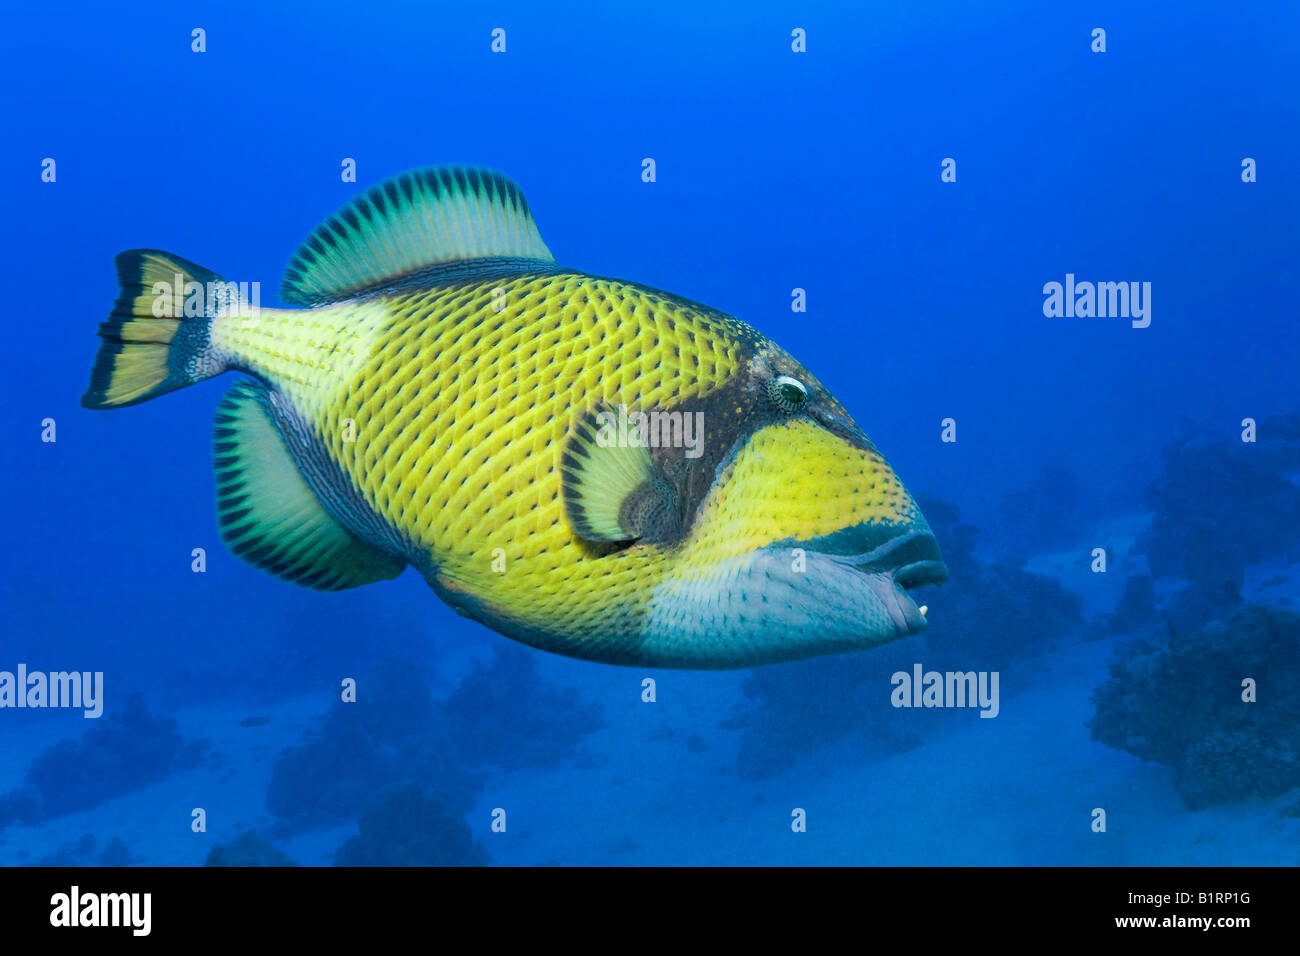 Pesce Grilletto Immagini e Fotos Stock - Alamy